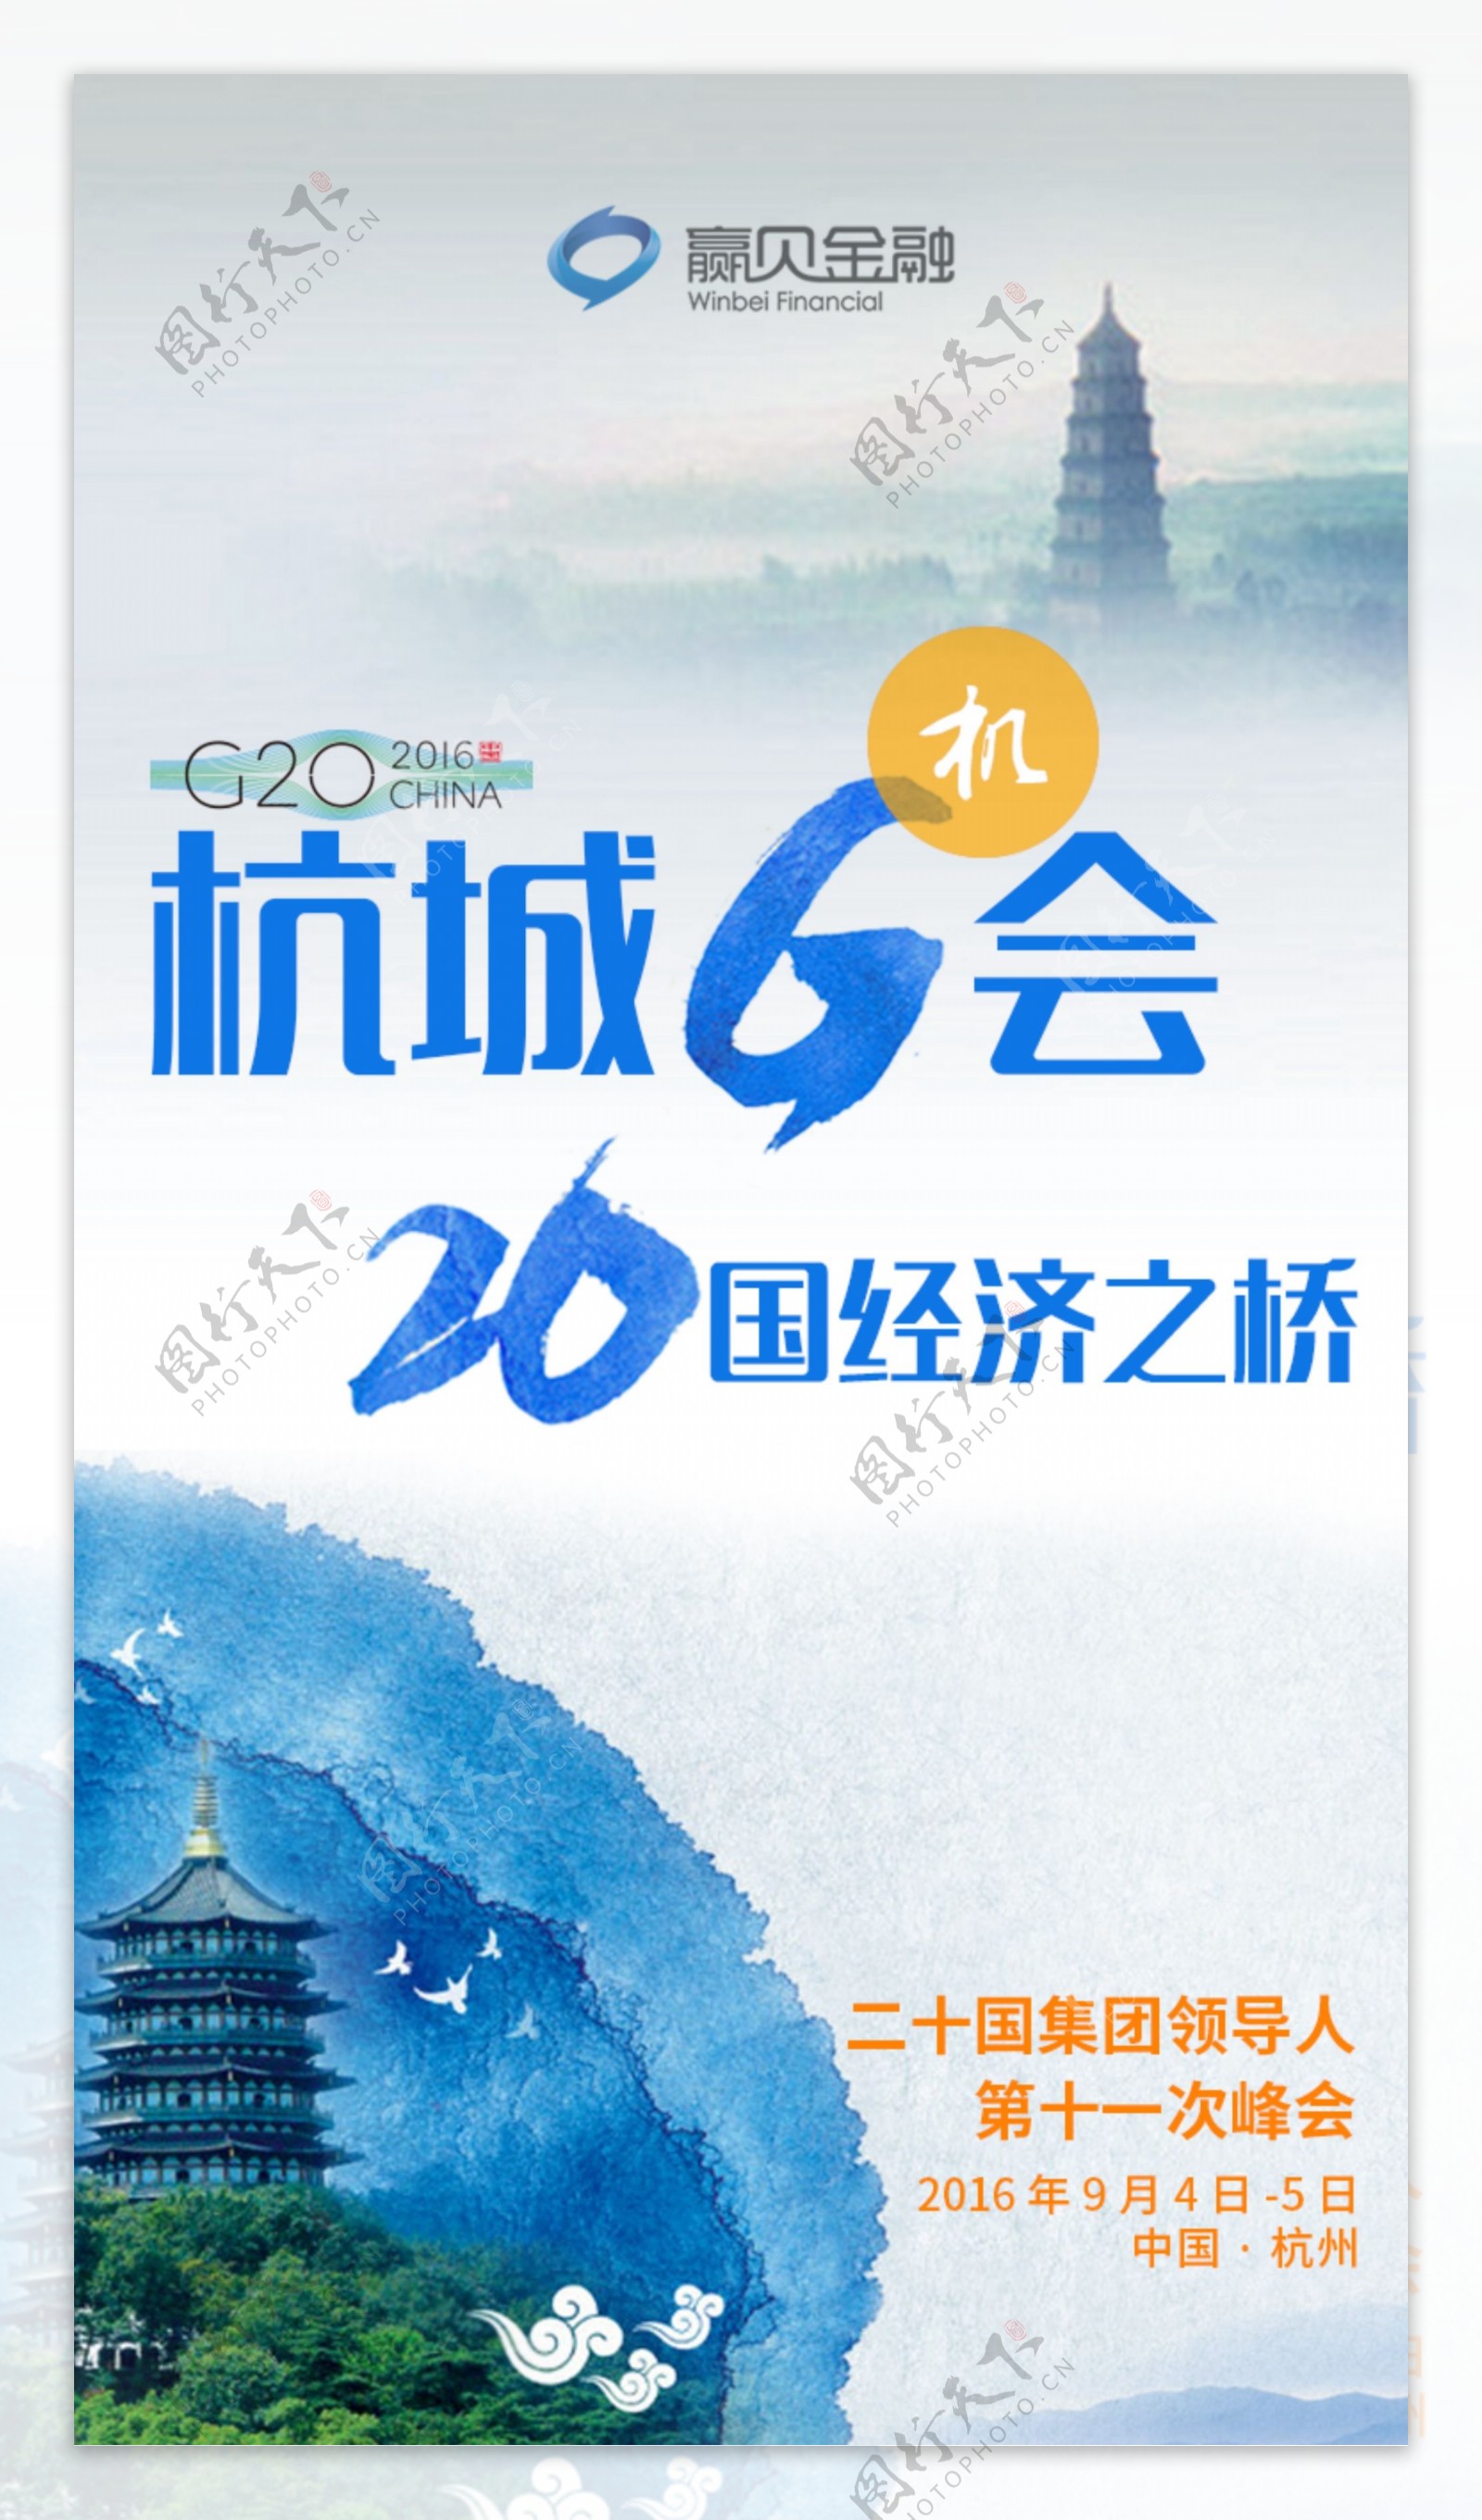 杭州G20峰会宣传海报